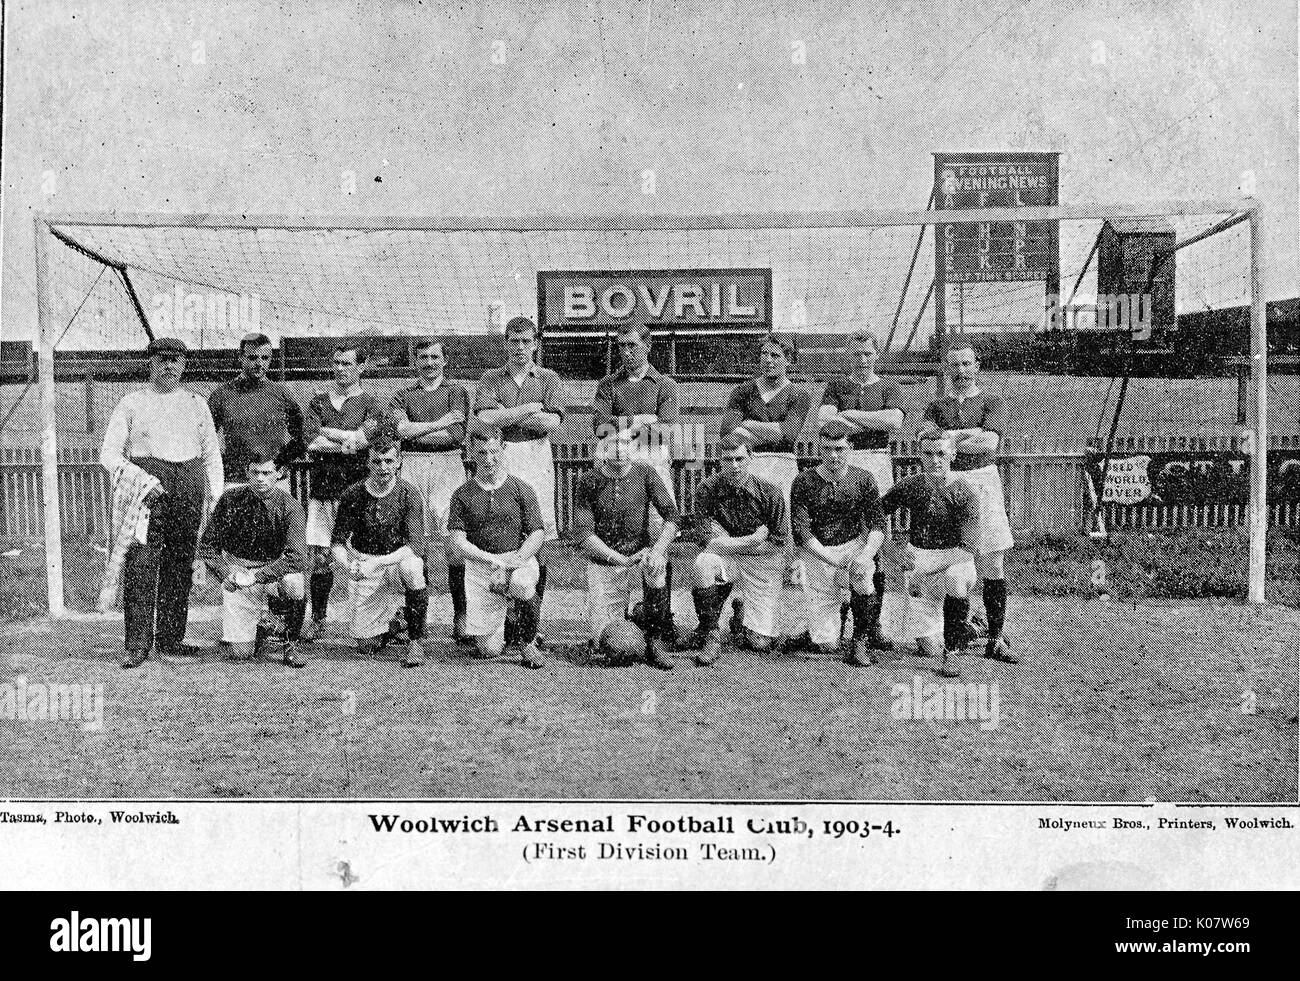 Woolwich Arsenal Football Club foto de equipo, la temporada de 1903-1904. Fecha: 1903-1904 Foto de stock